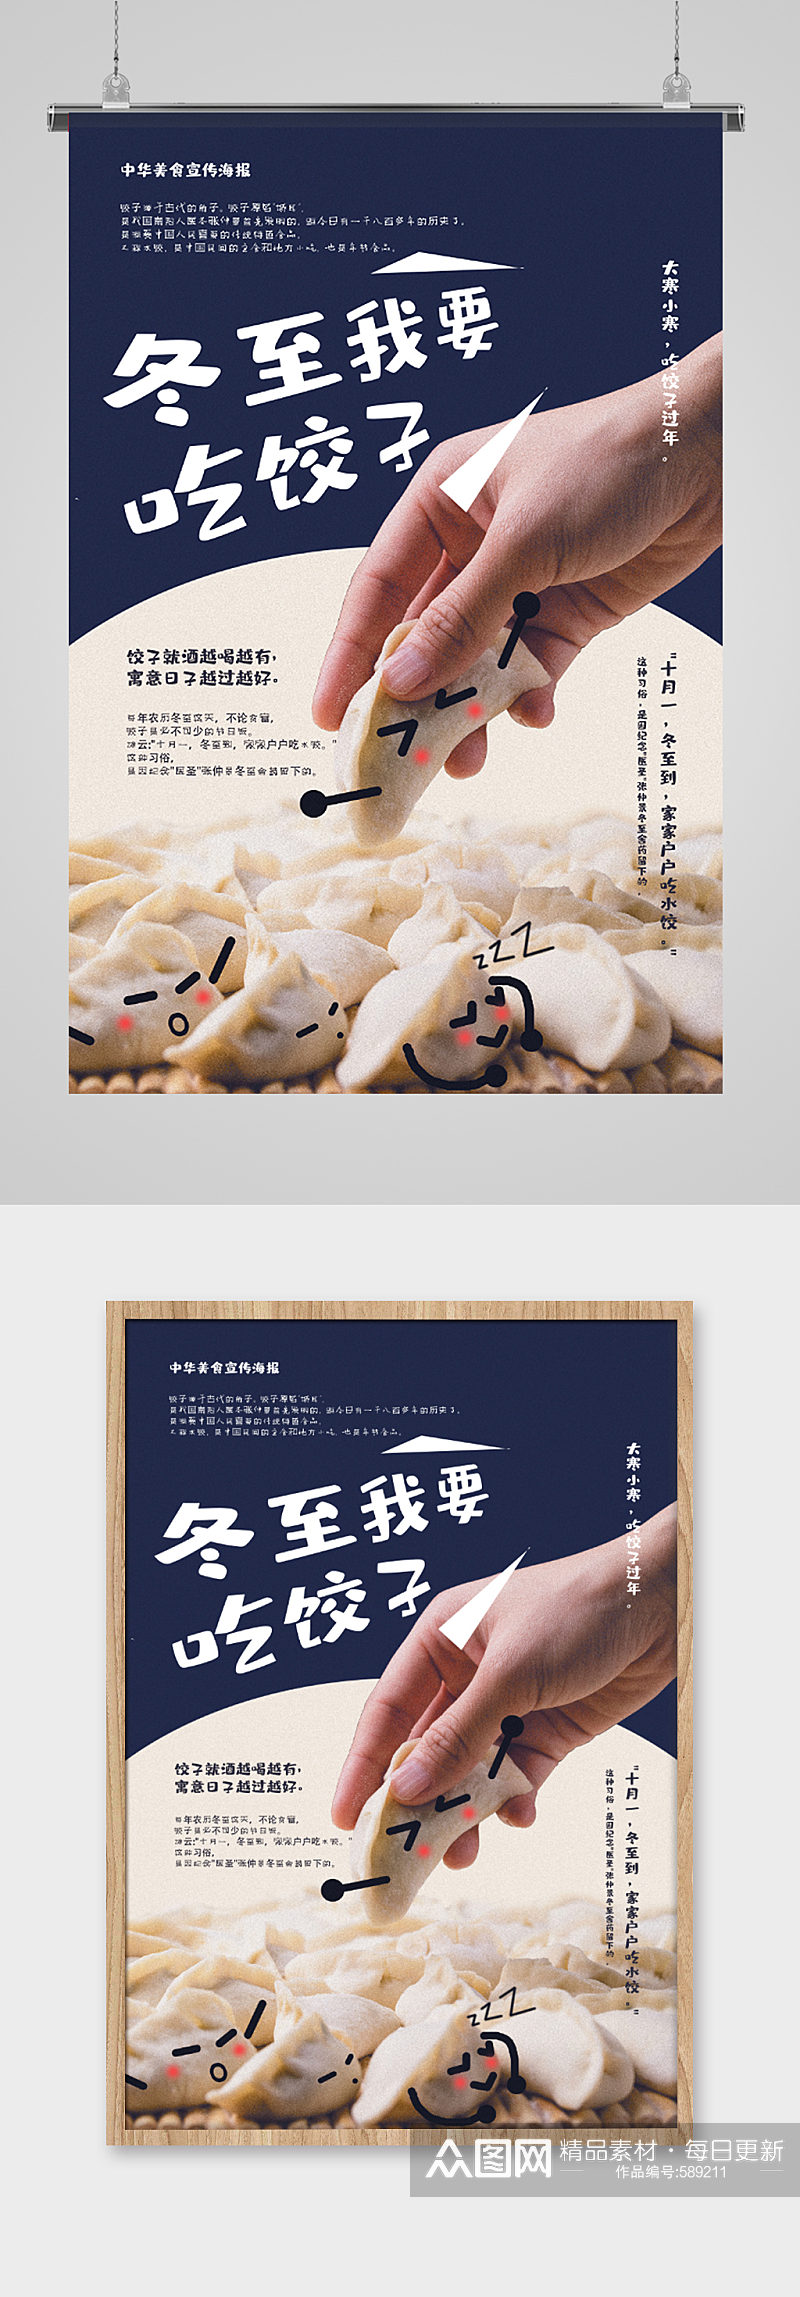 冬至吃饺子美食宣传海报素材